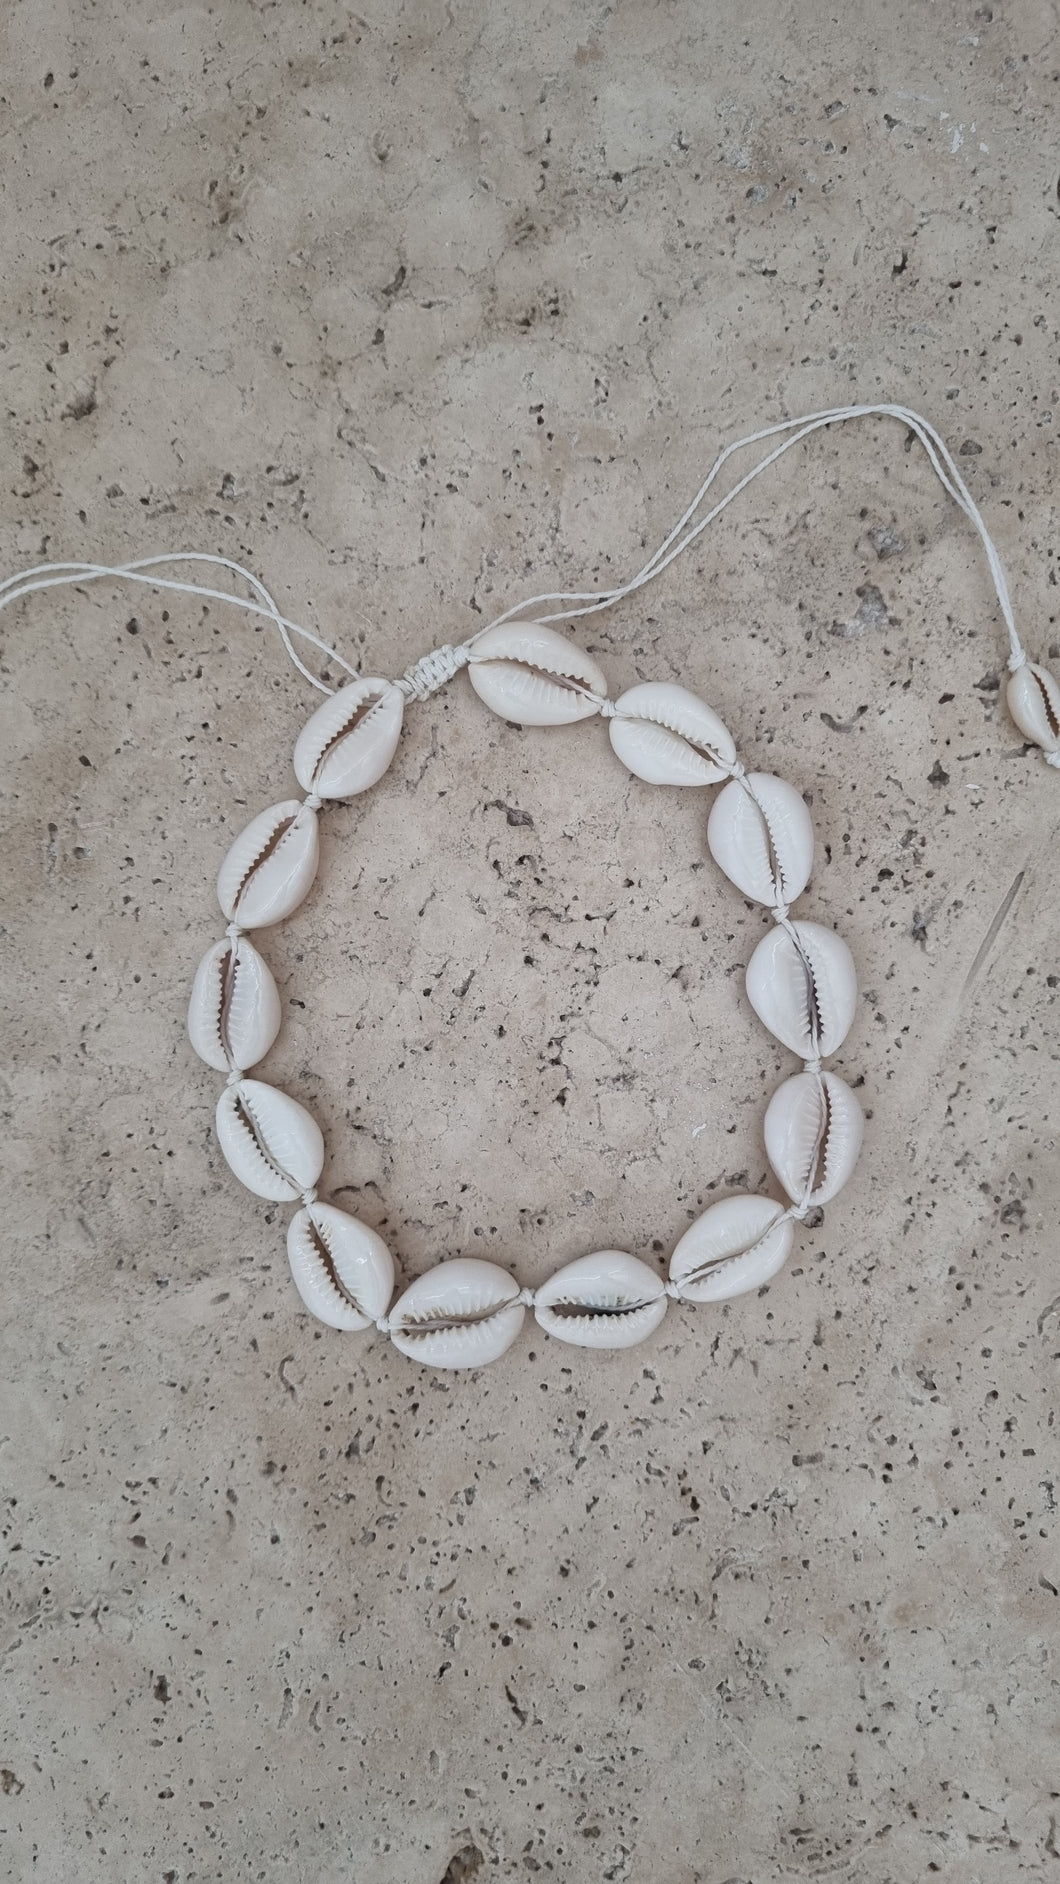 Shell choker necklace